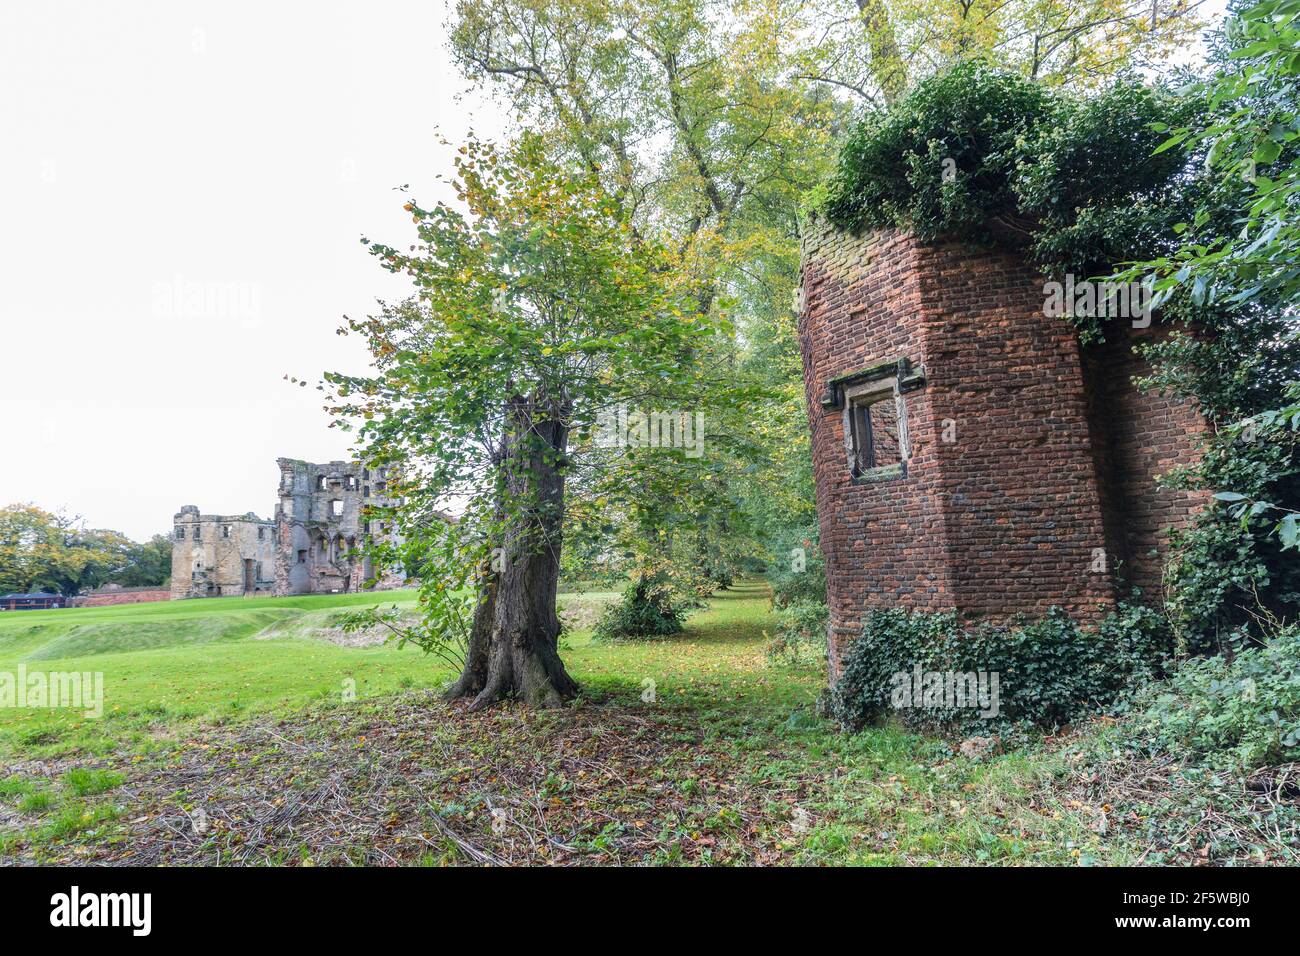 Vestiges de l'une des tours en briques construites dans le Wilderness au château d'Ashby de la Zouch, Leicestershire, Angleterre, Royaume-Uni Banque D'Images